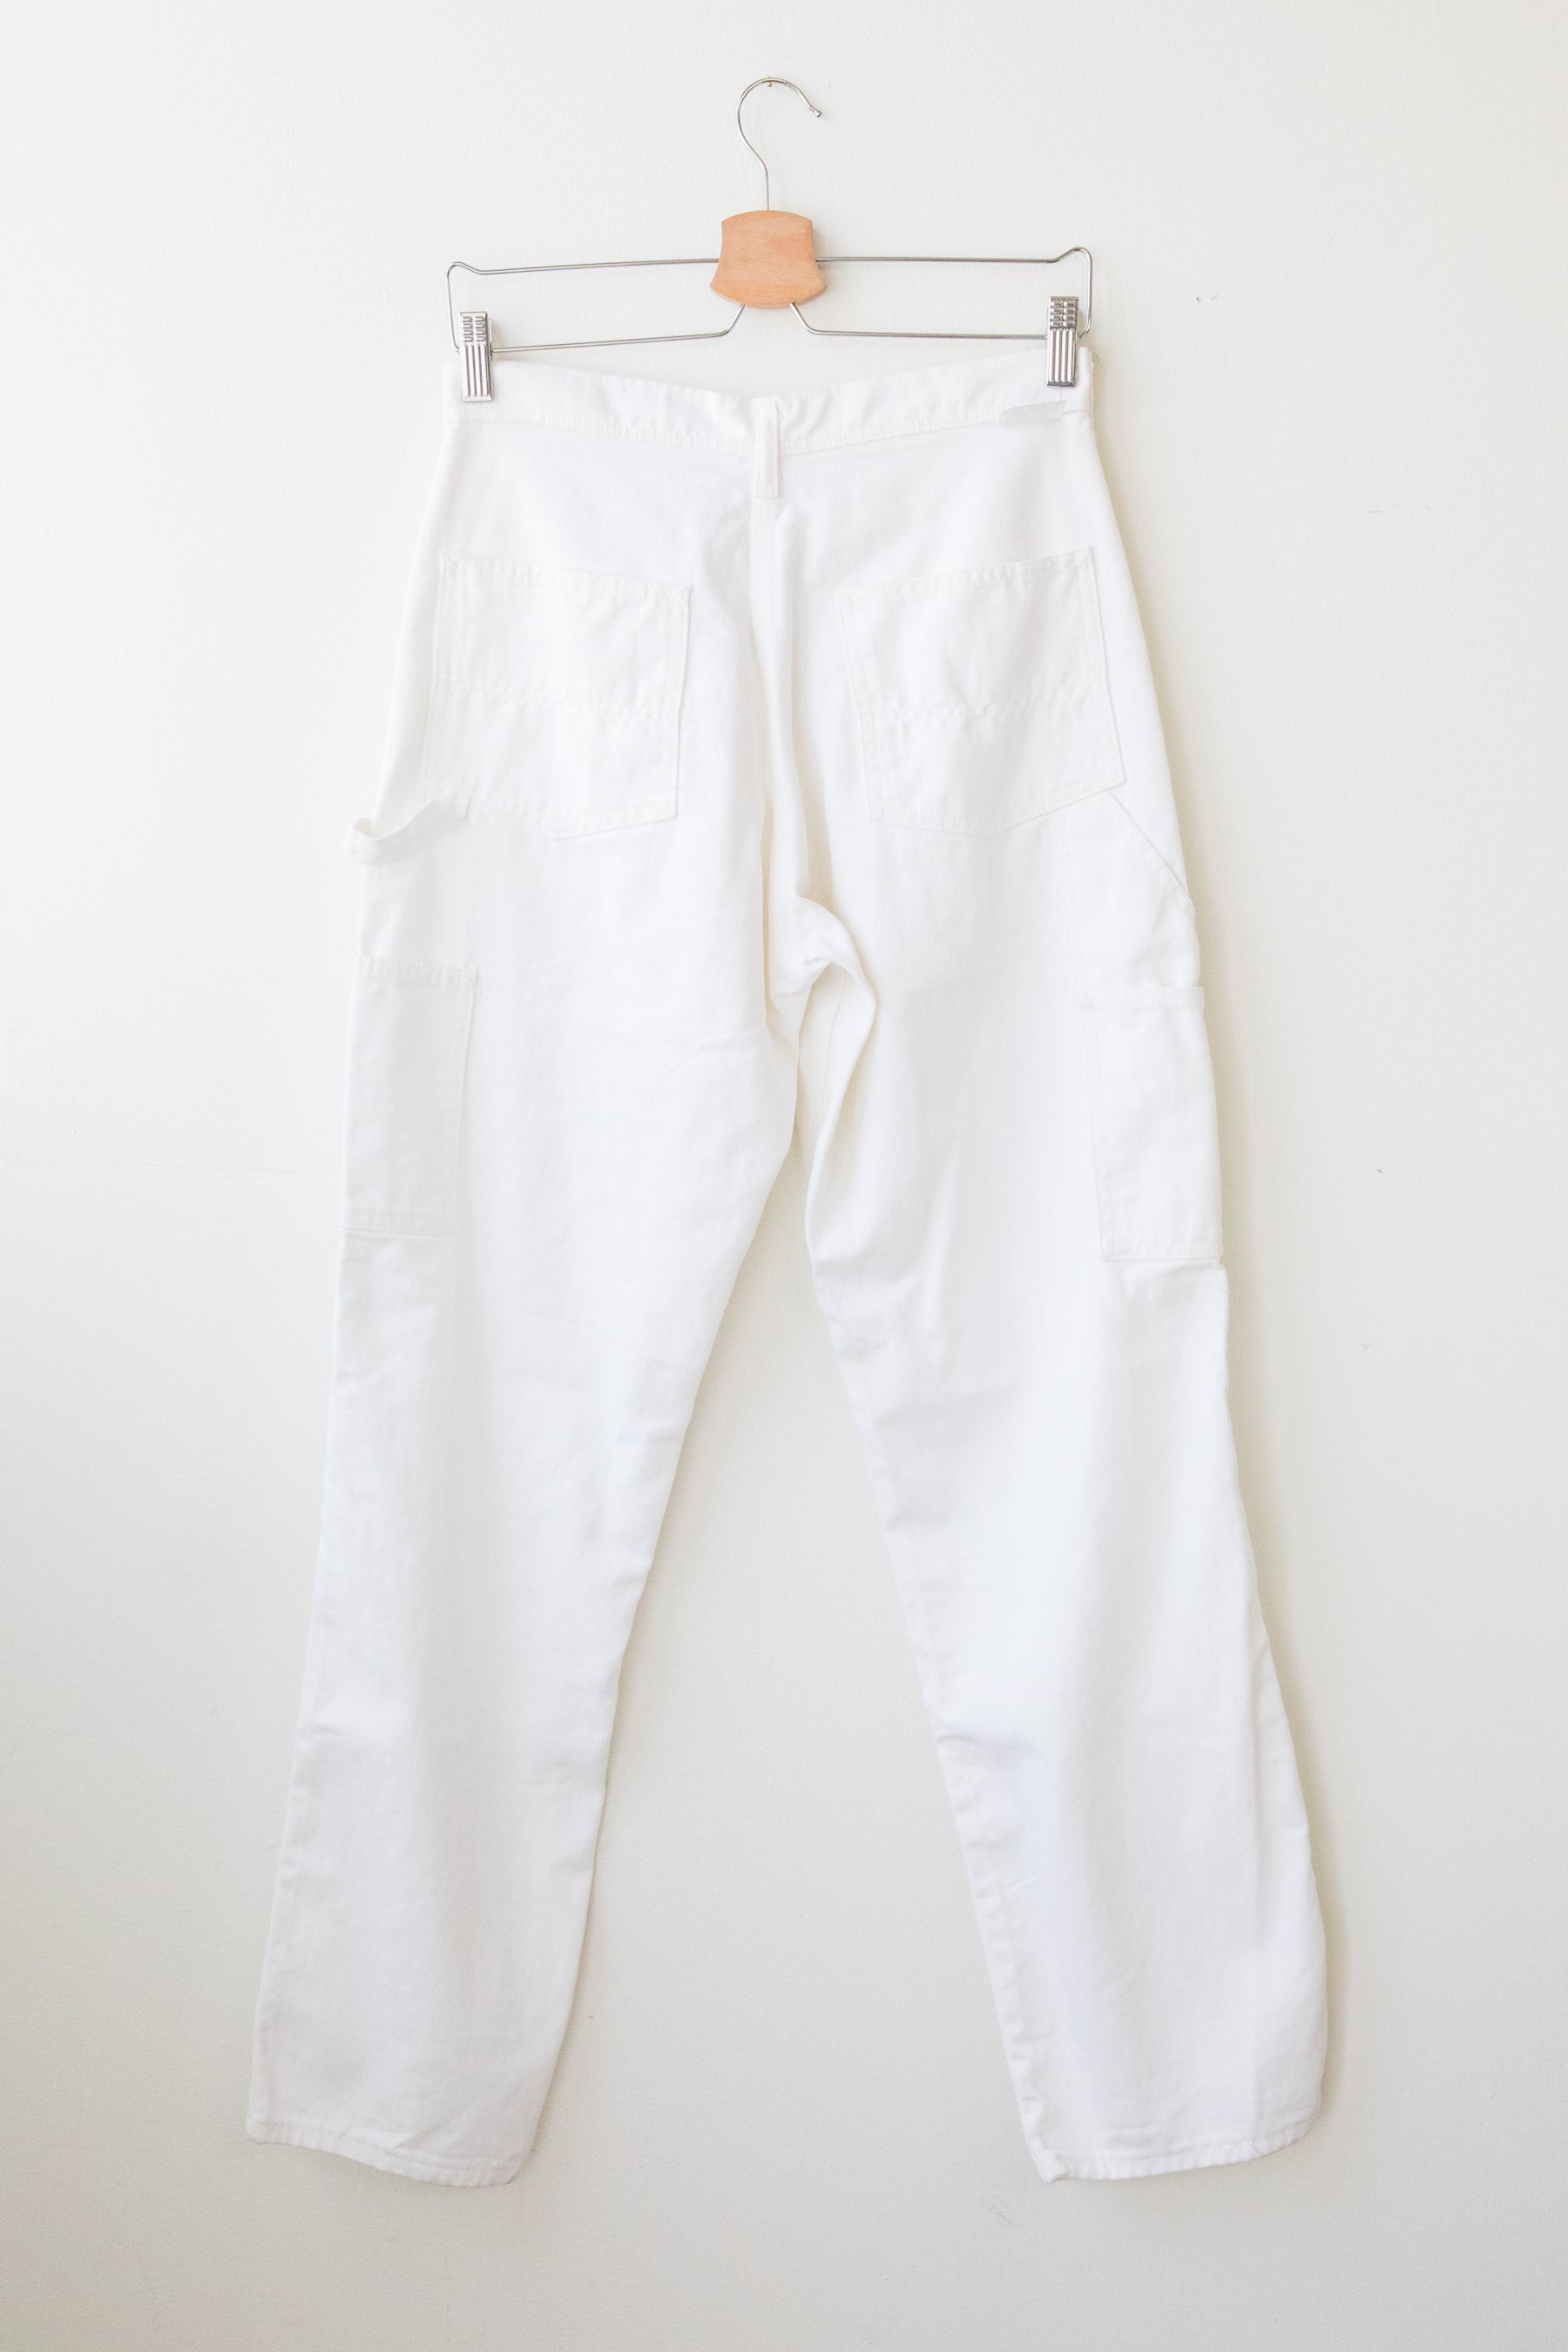 Vintage White Painter Pants – Prism Boutique